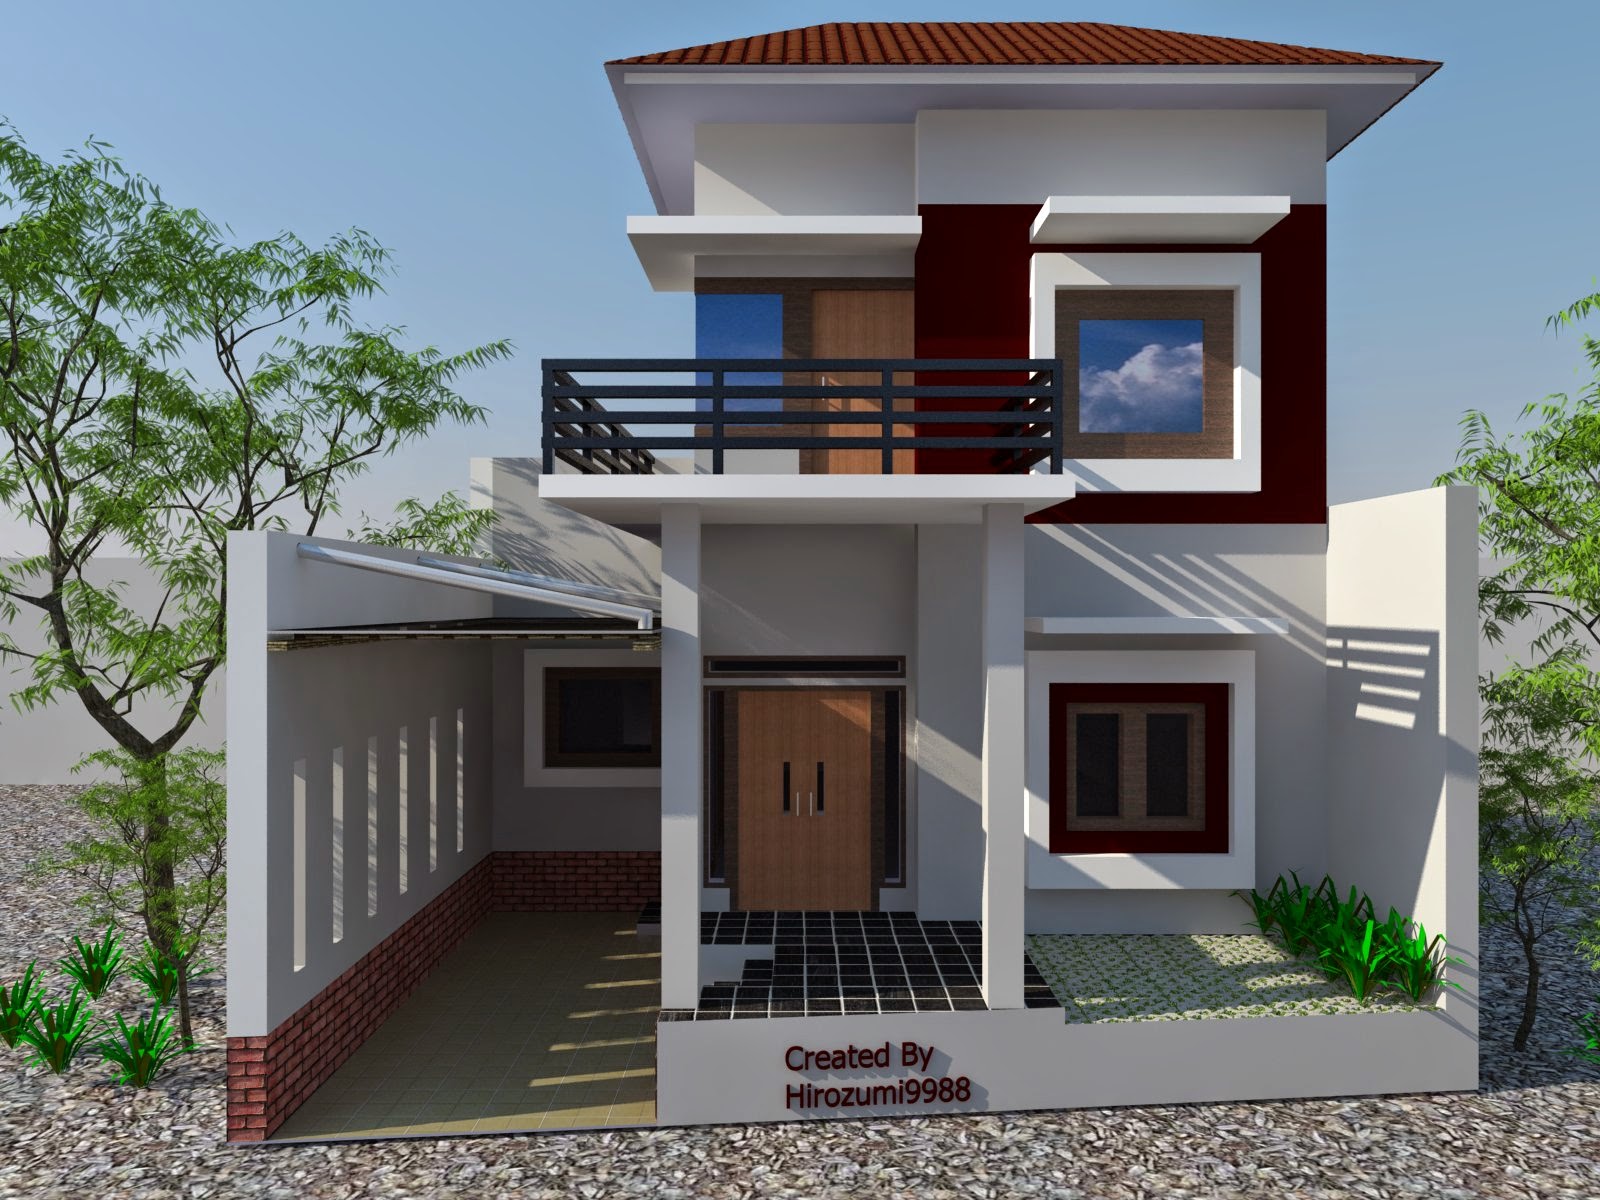 Biaya Rumah Minimalis 2 Lantai Sederhana Desain Rumah Minimalis